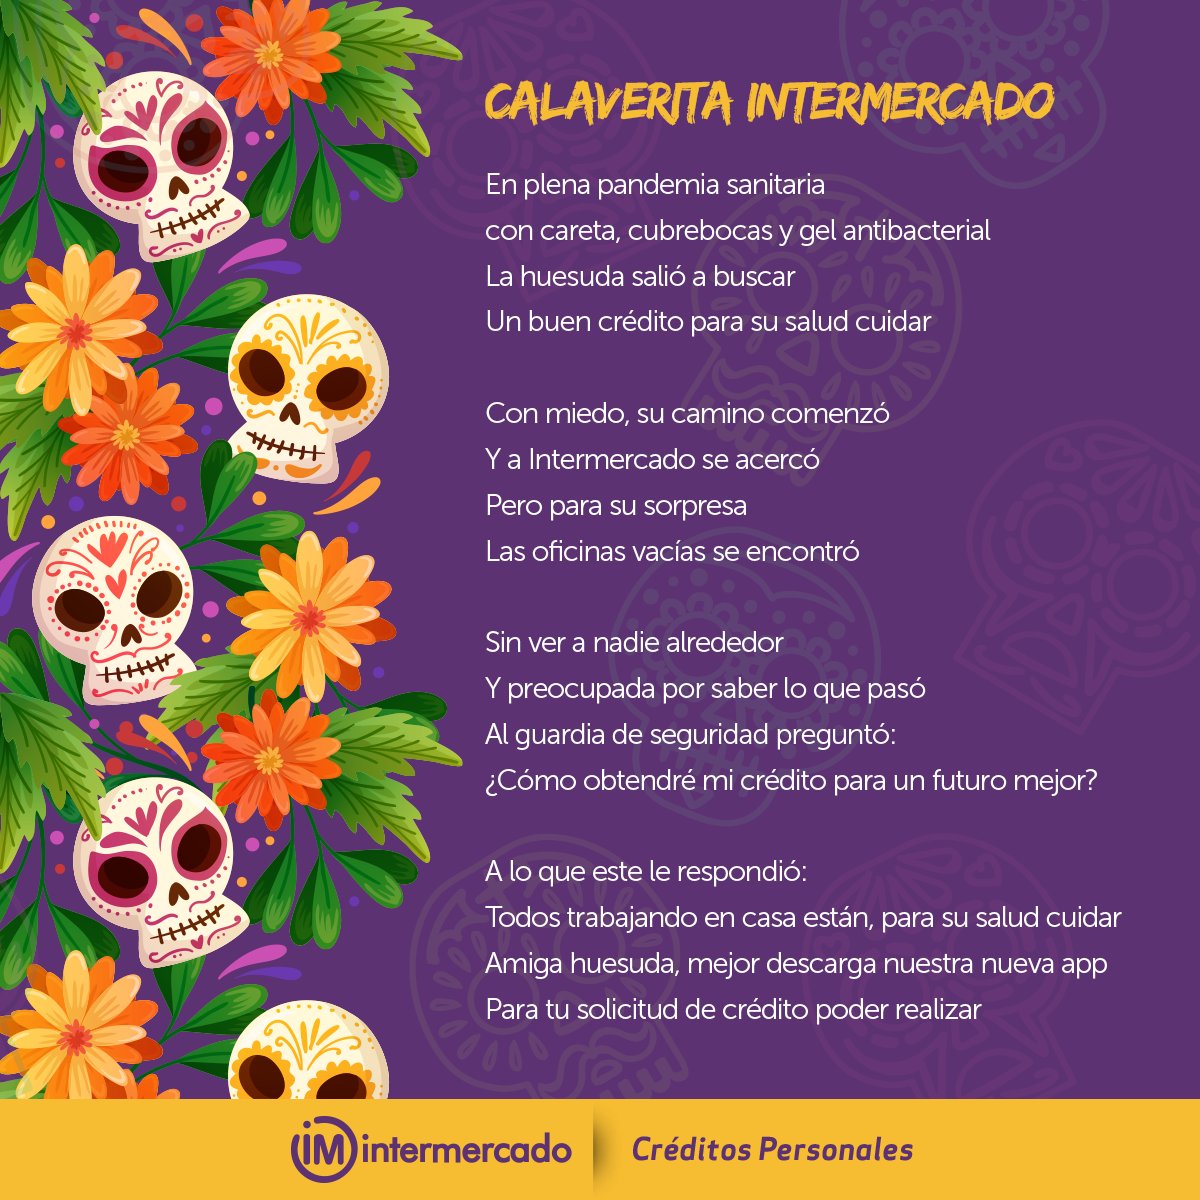 Chillido Armonioso lantano Intermercado on Twitter: "Las calaveritas literarias son parte de nuestras  tradiciones, ¡Feliz Día de Muertos! 🎉 https://t.co/bBrLa5ZSH9" / Twitter